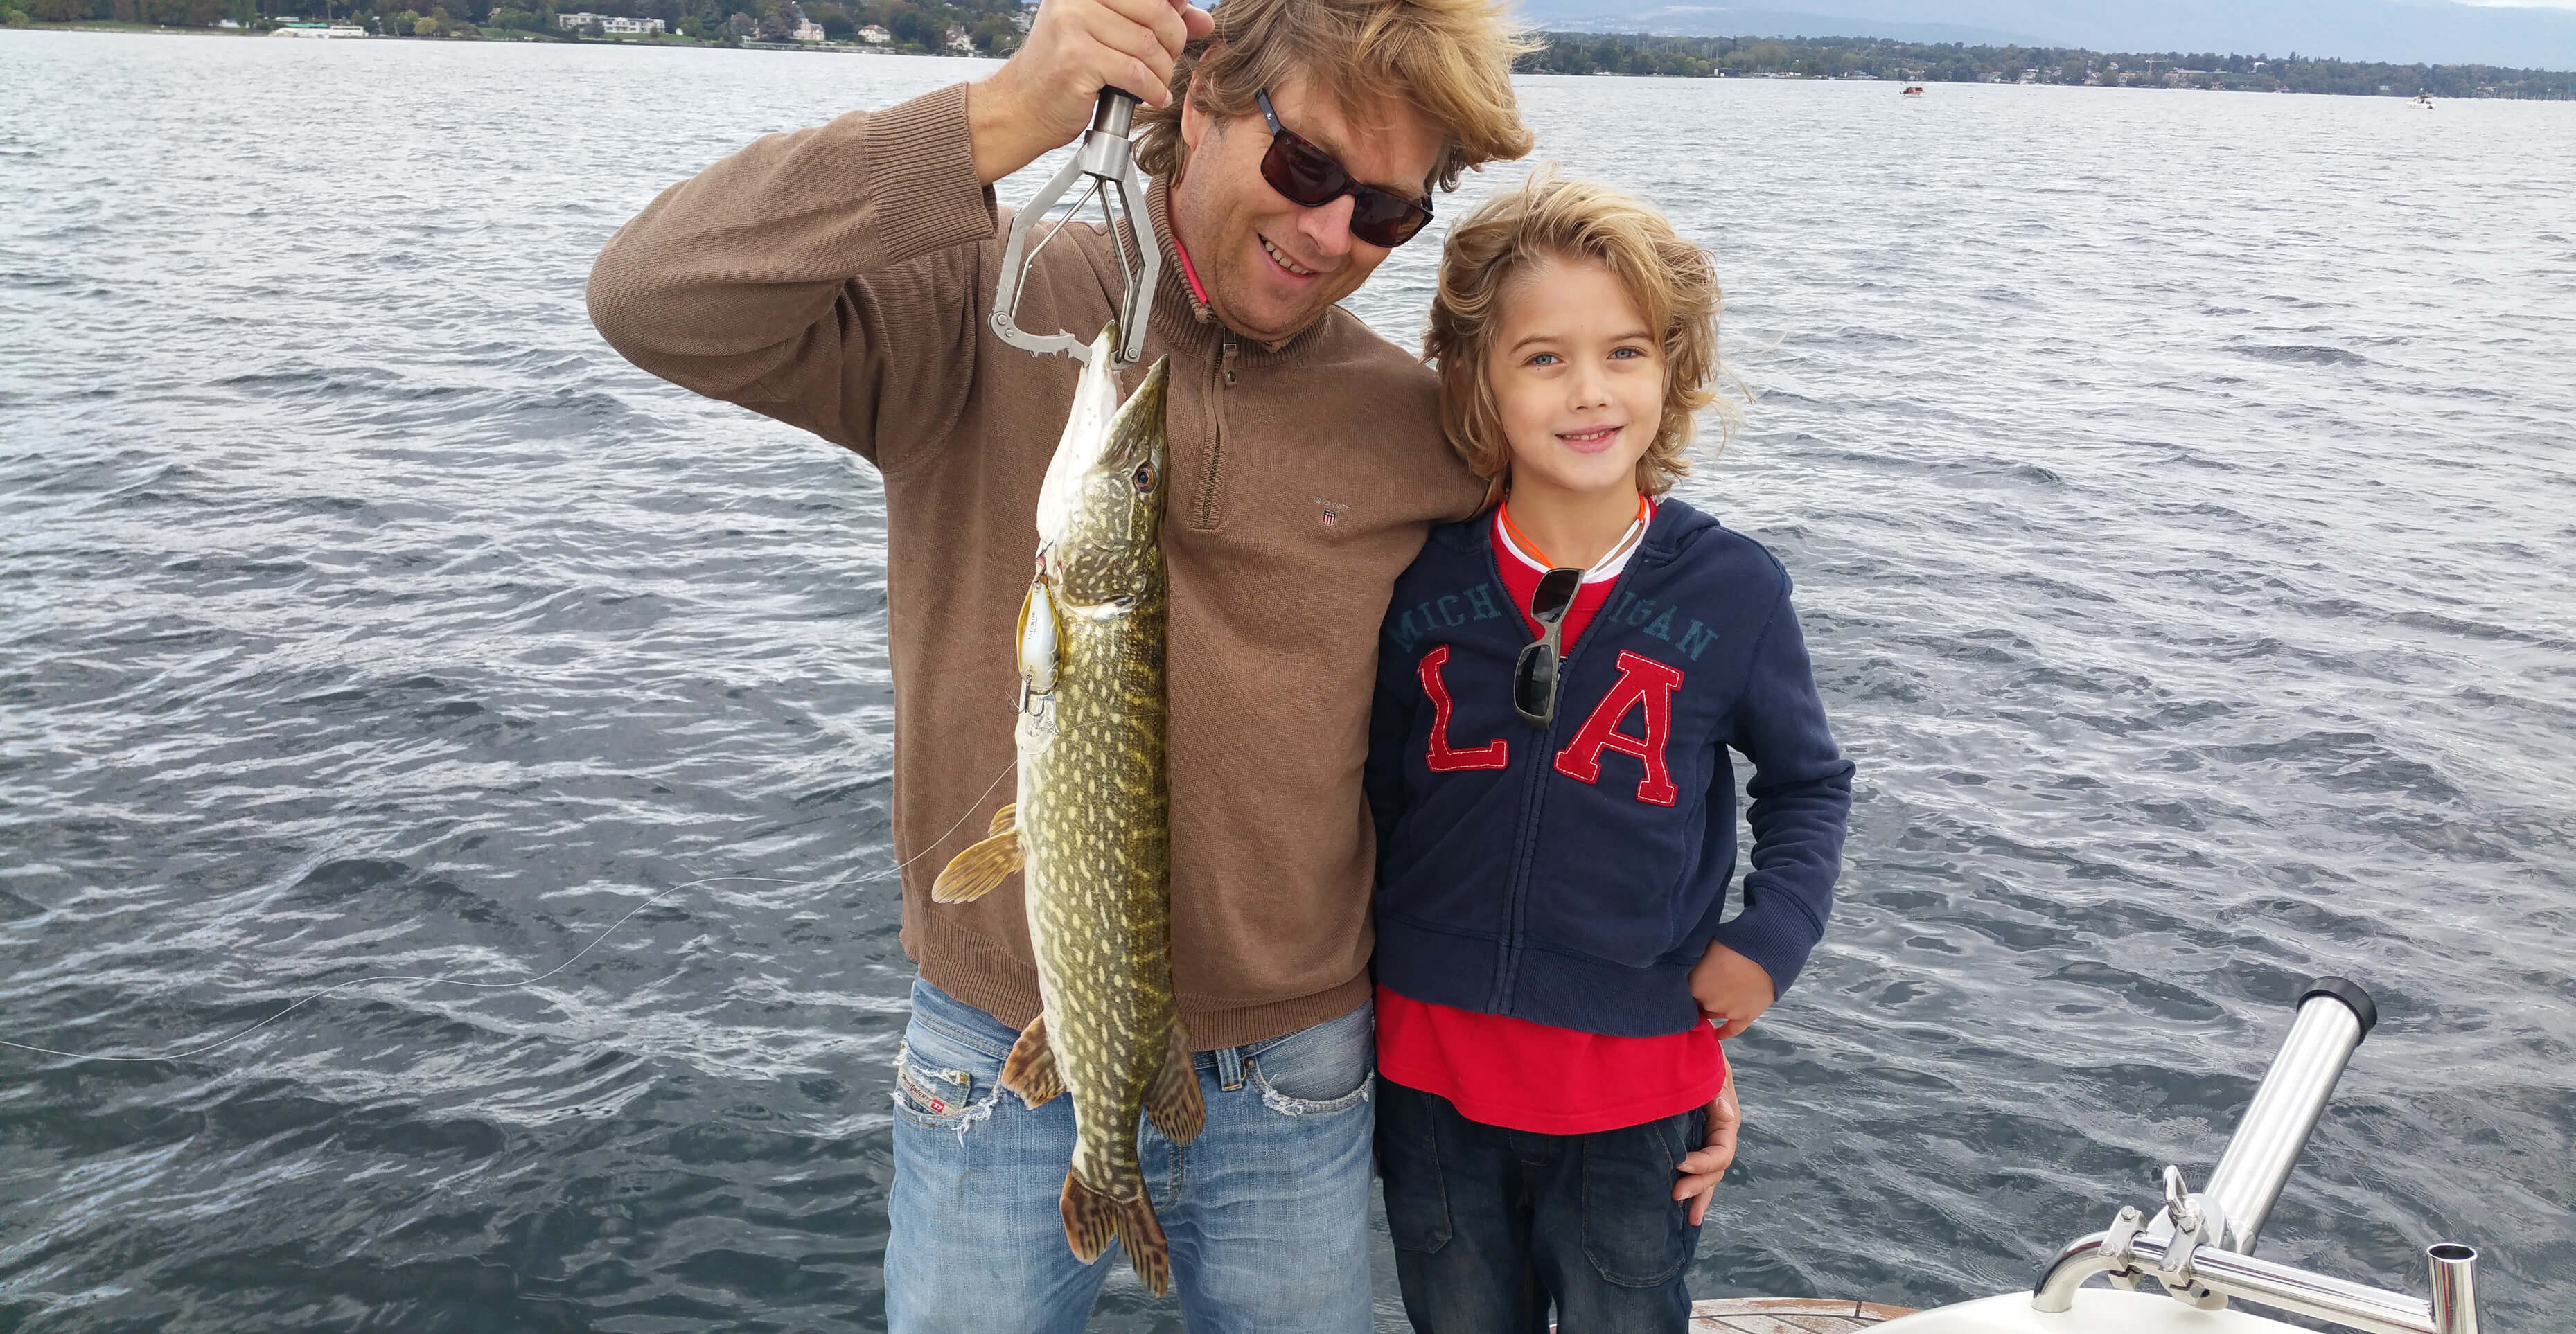 Fishing on Lake Geneva